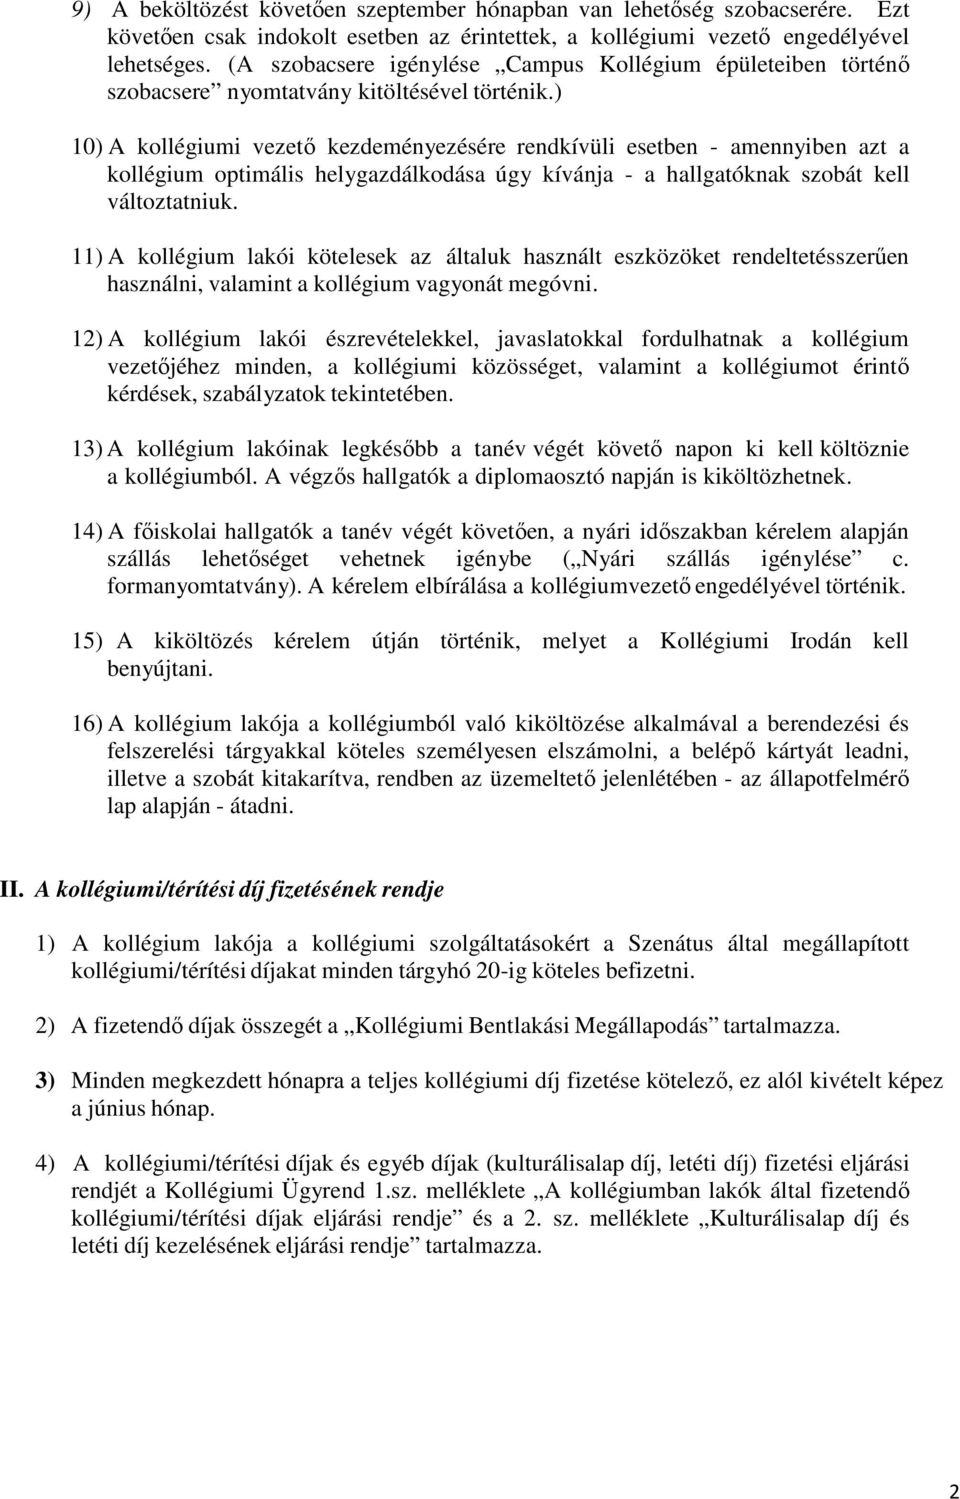 CAMPUS KOLLÉGIUM HÁZIRENDJE - PDF Ingyenes letöltés